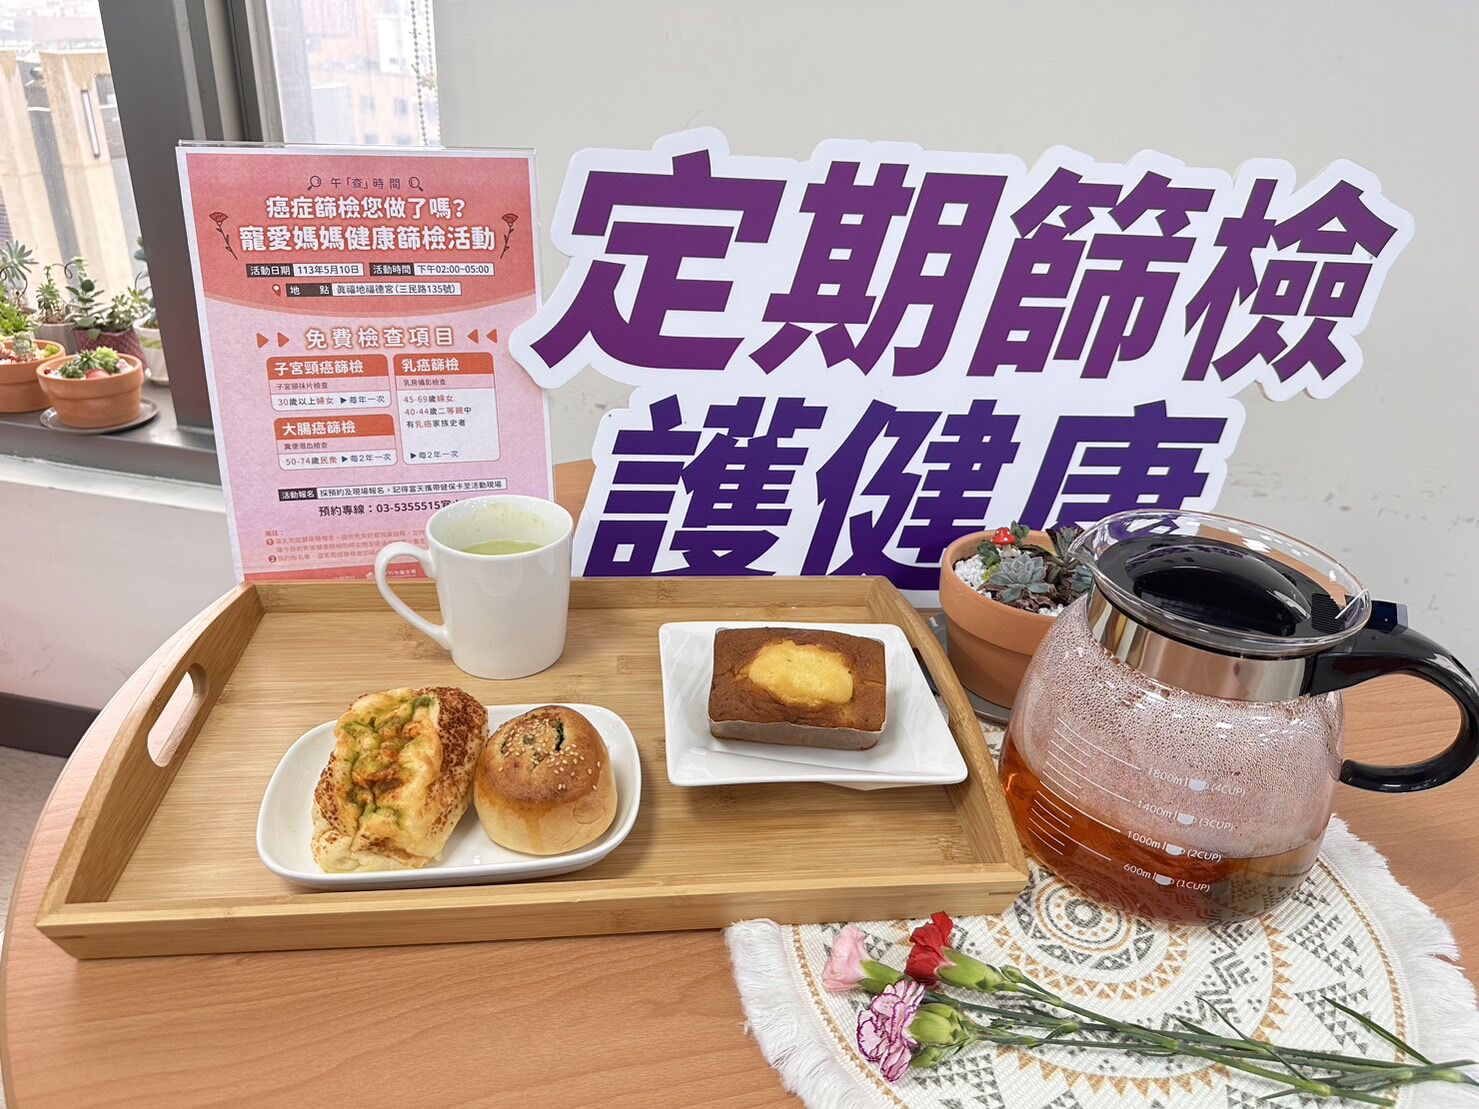 免費婦癌篩檢活動，新竹市衛生局提供免費下午茶餐點。